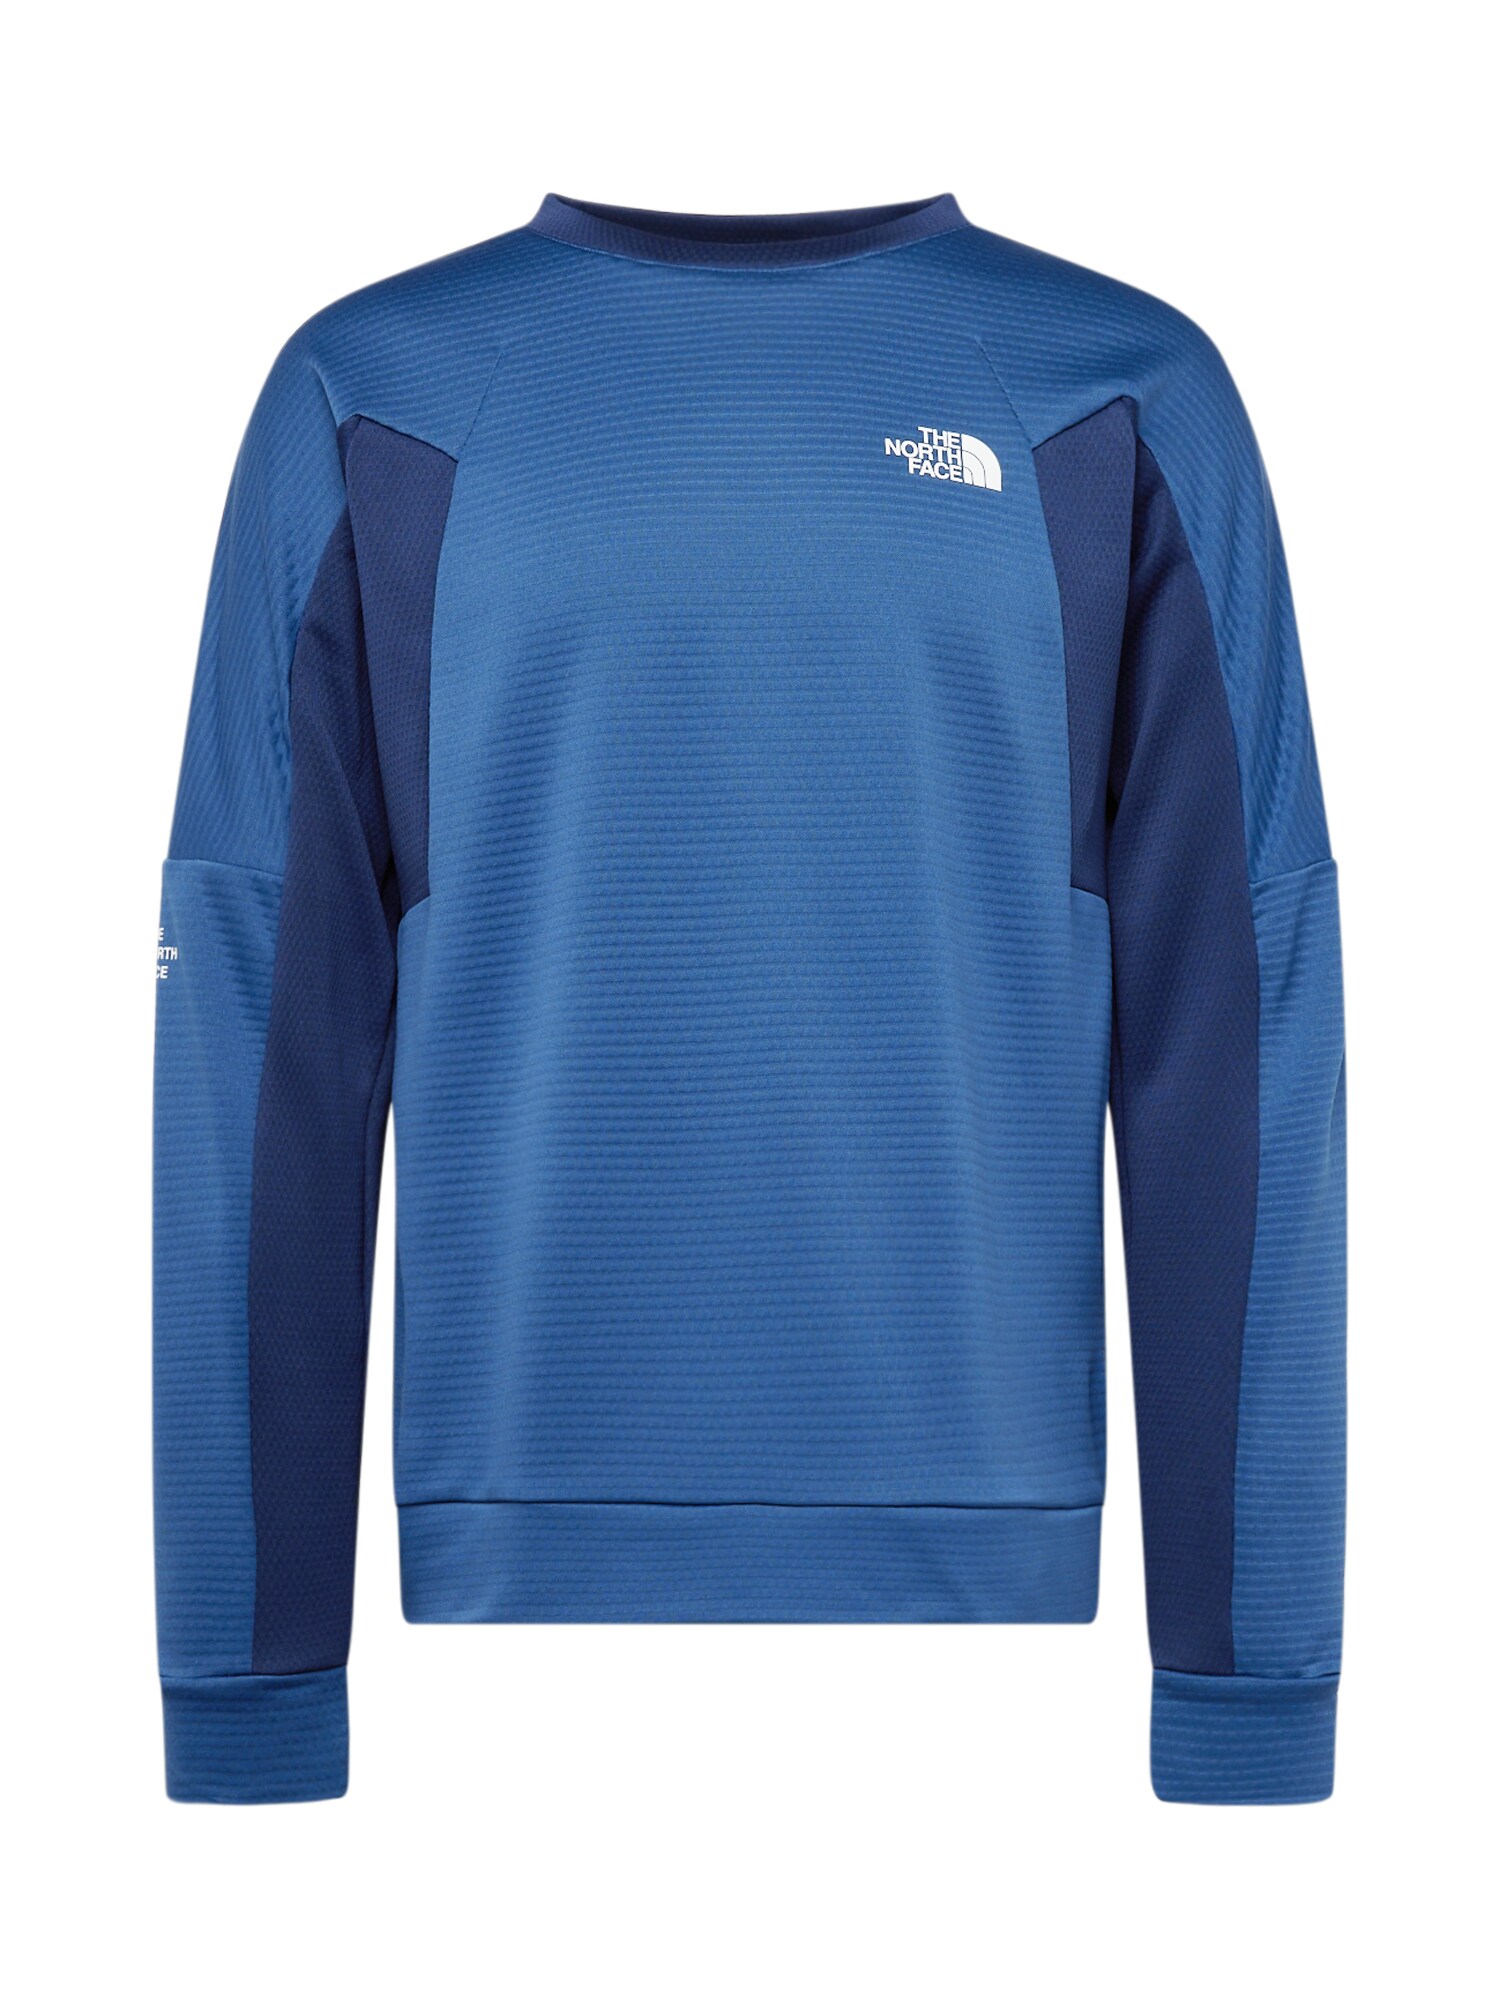 THE NORTH FACE Sportska sweater majica  plava / tamno plava / bijela